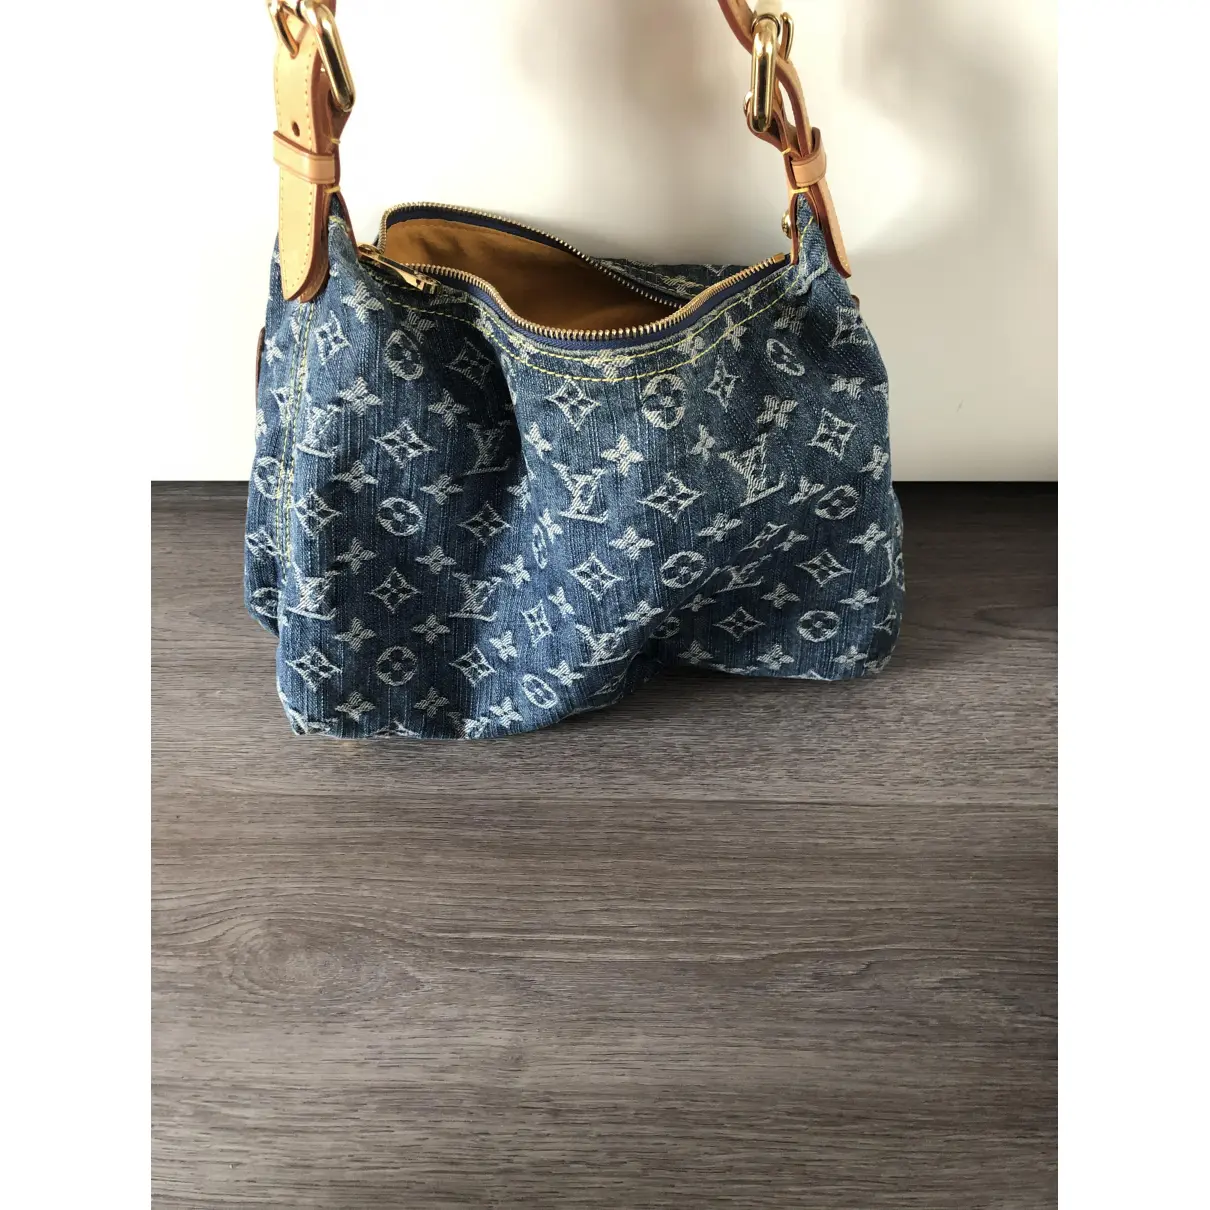 Buy Louis Vuitton Baggy handbag online